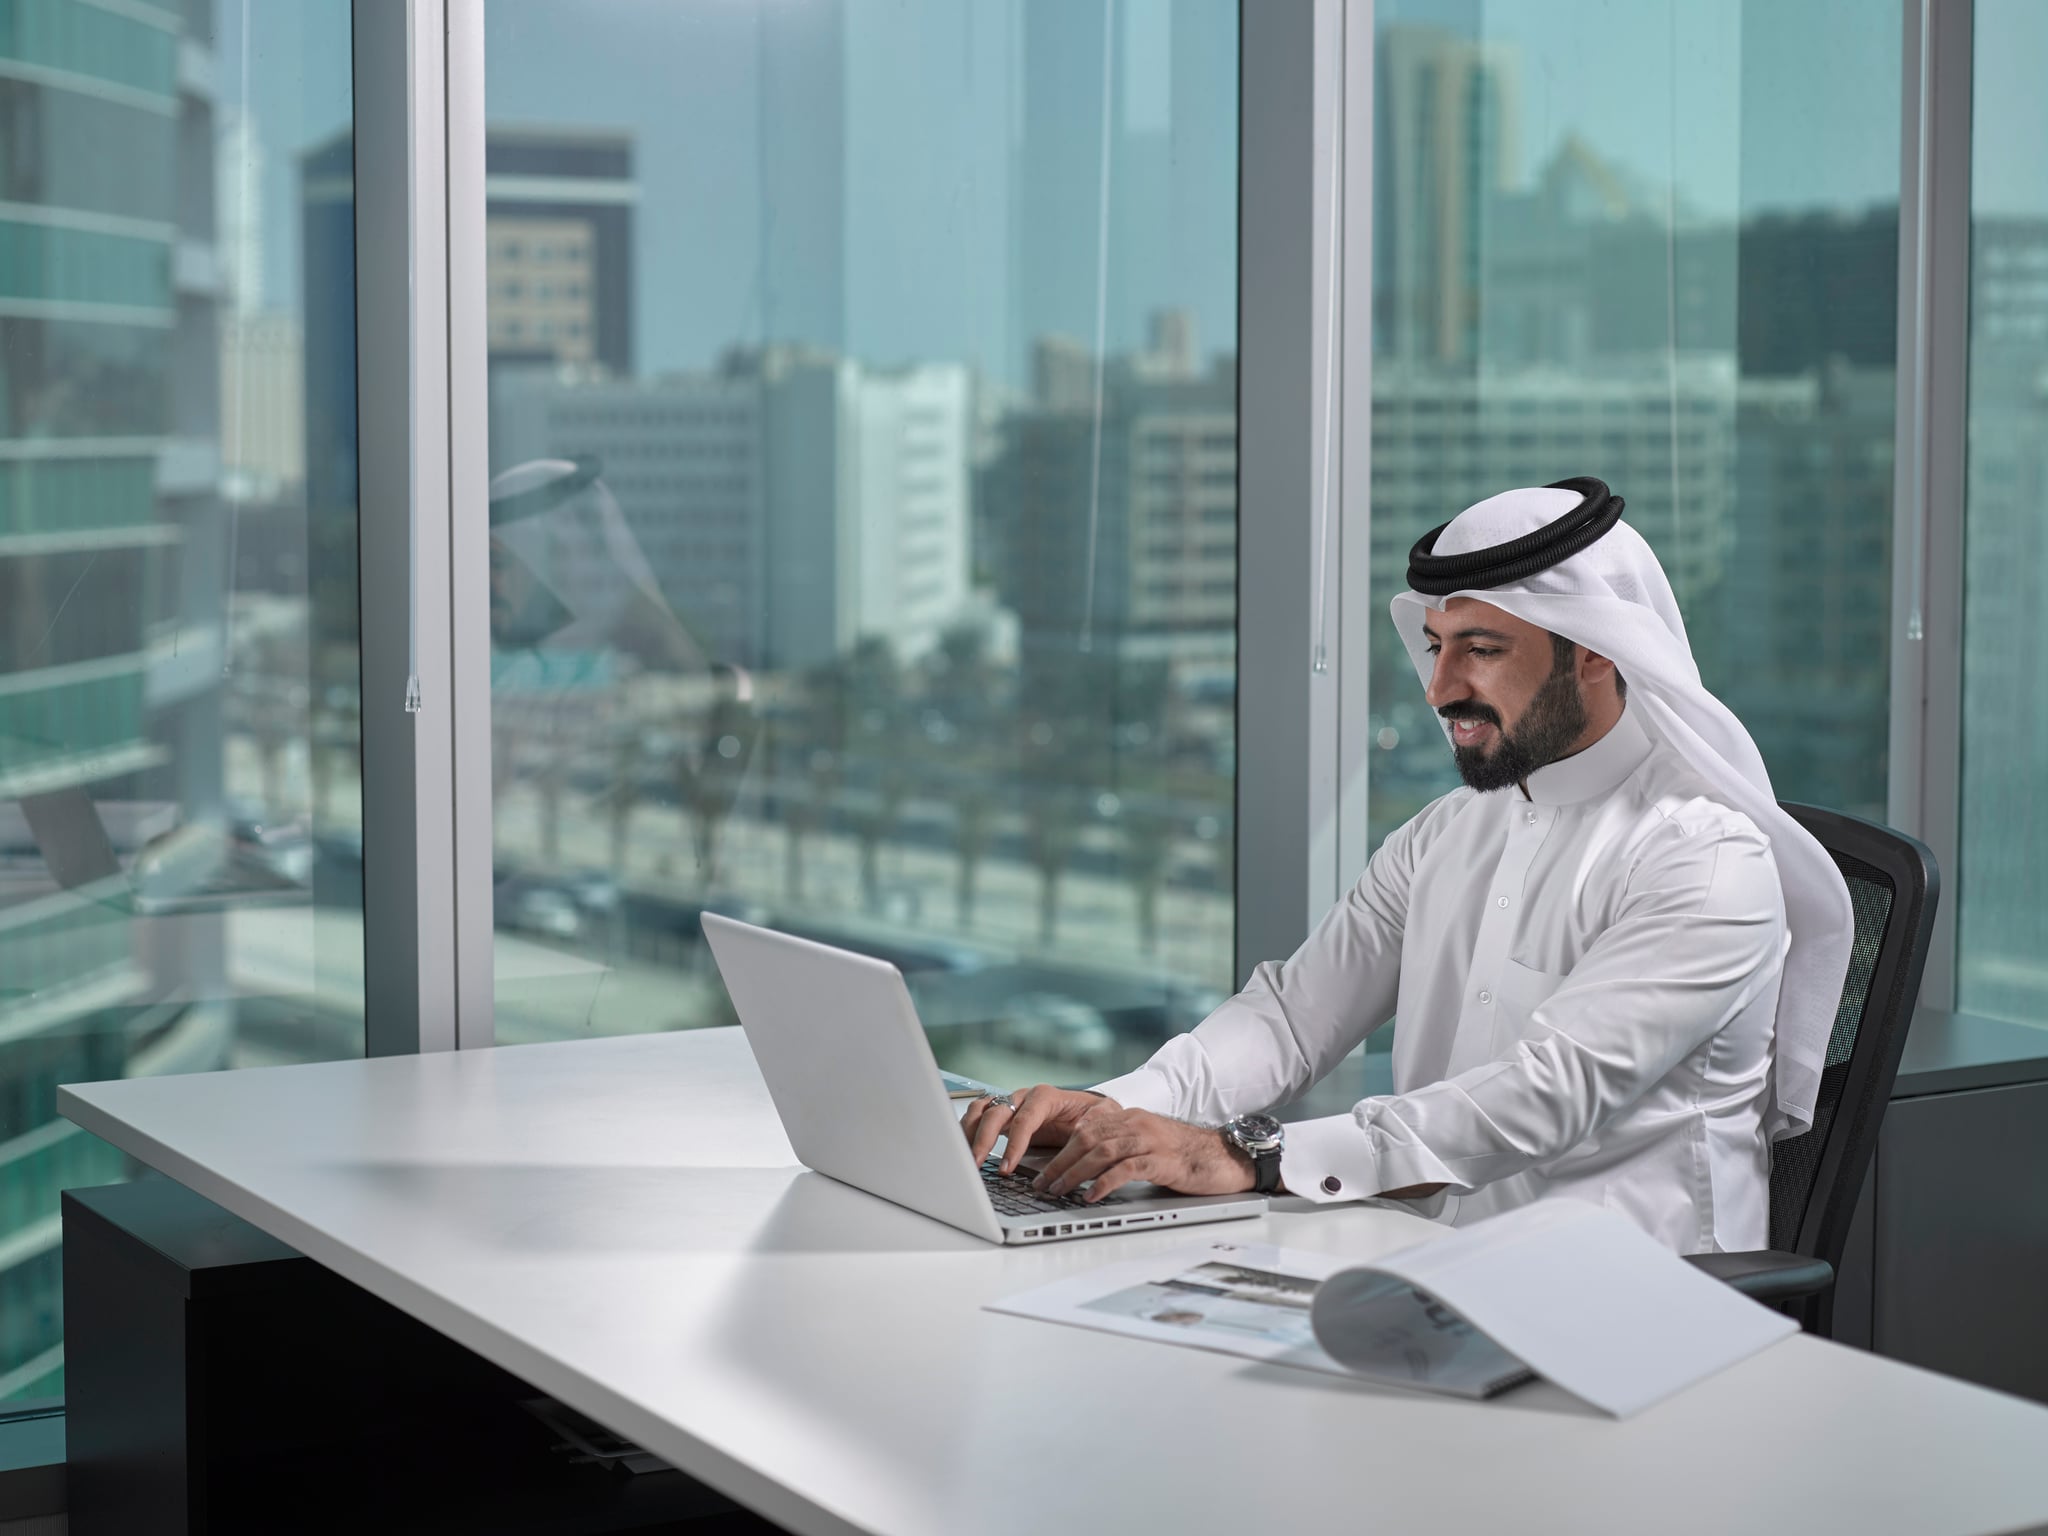 Вопрос арабу. Араб Имиратох. Араб в офисе. Араб за компьютером. Арабский предприниматель.